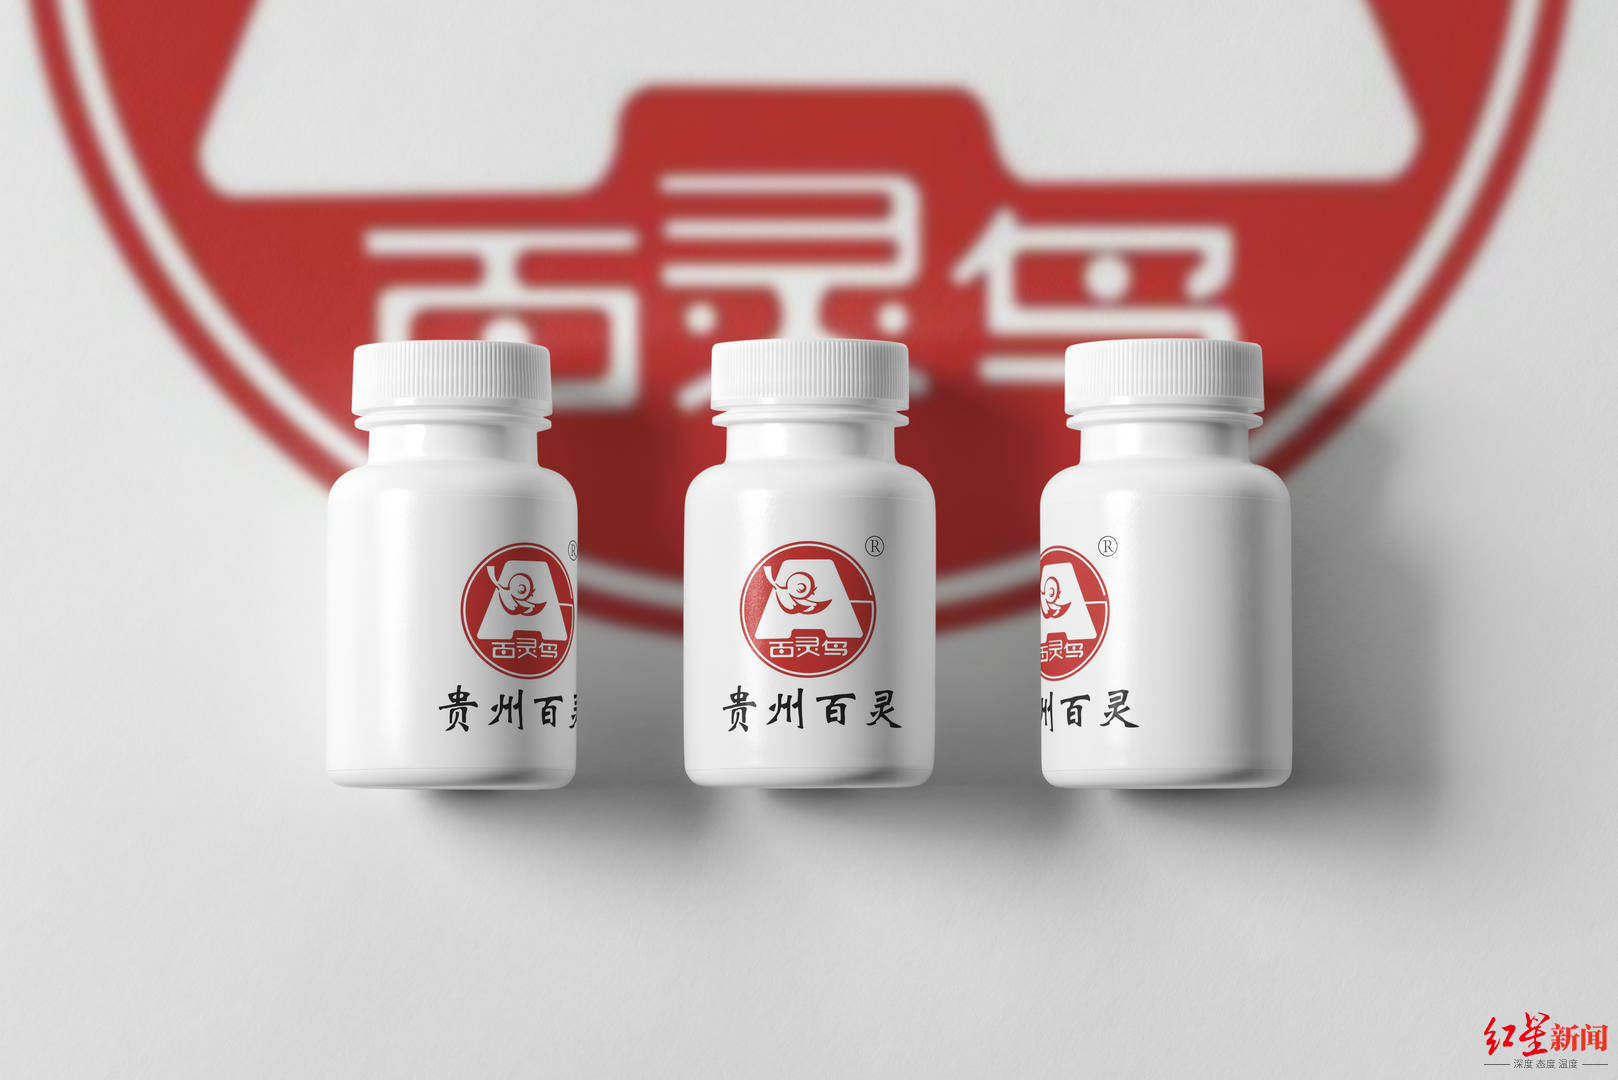 贵州百灵向毕节市大方方舱医院捐赠24000瓶“咳速停糖浆”--贵州百灵企业集团制药股份有限公司